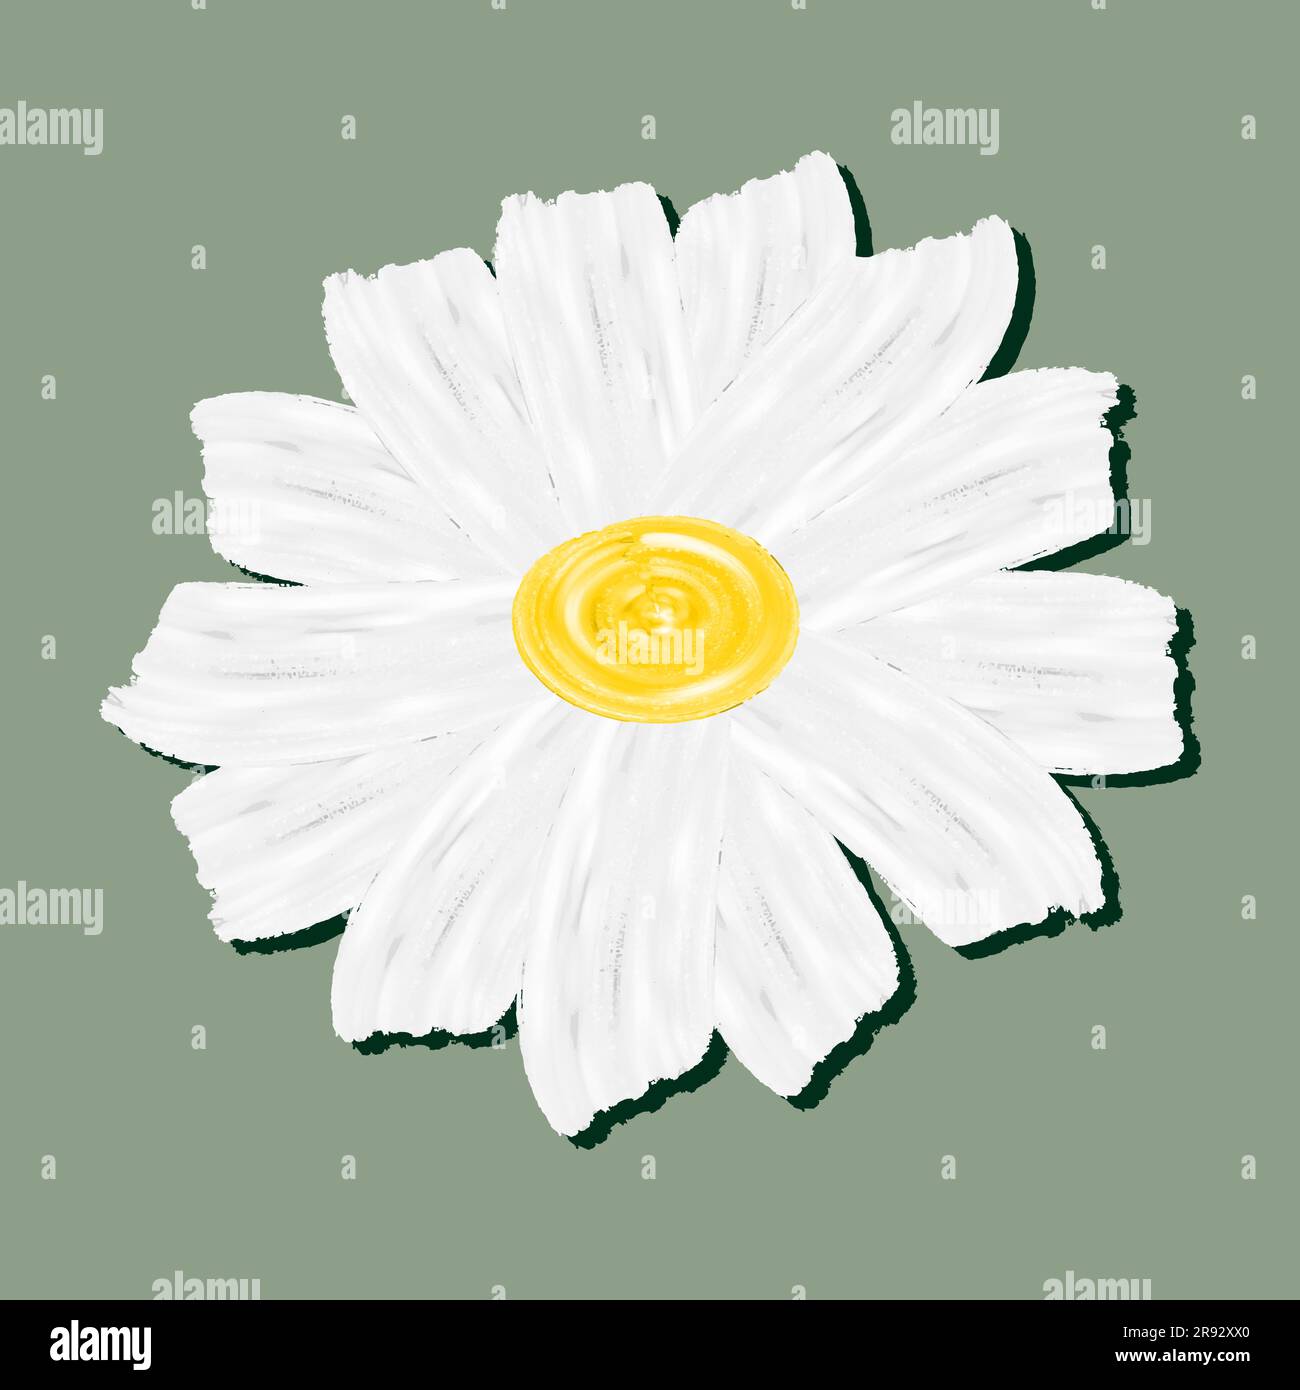 Daisy flower nature line art design t-shirt